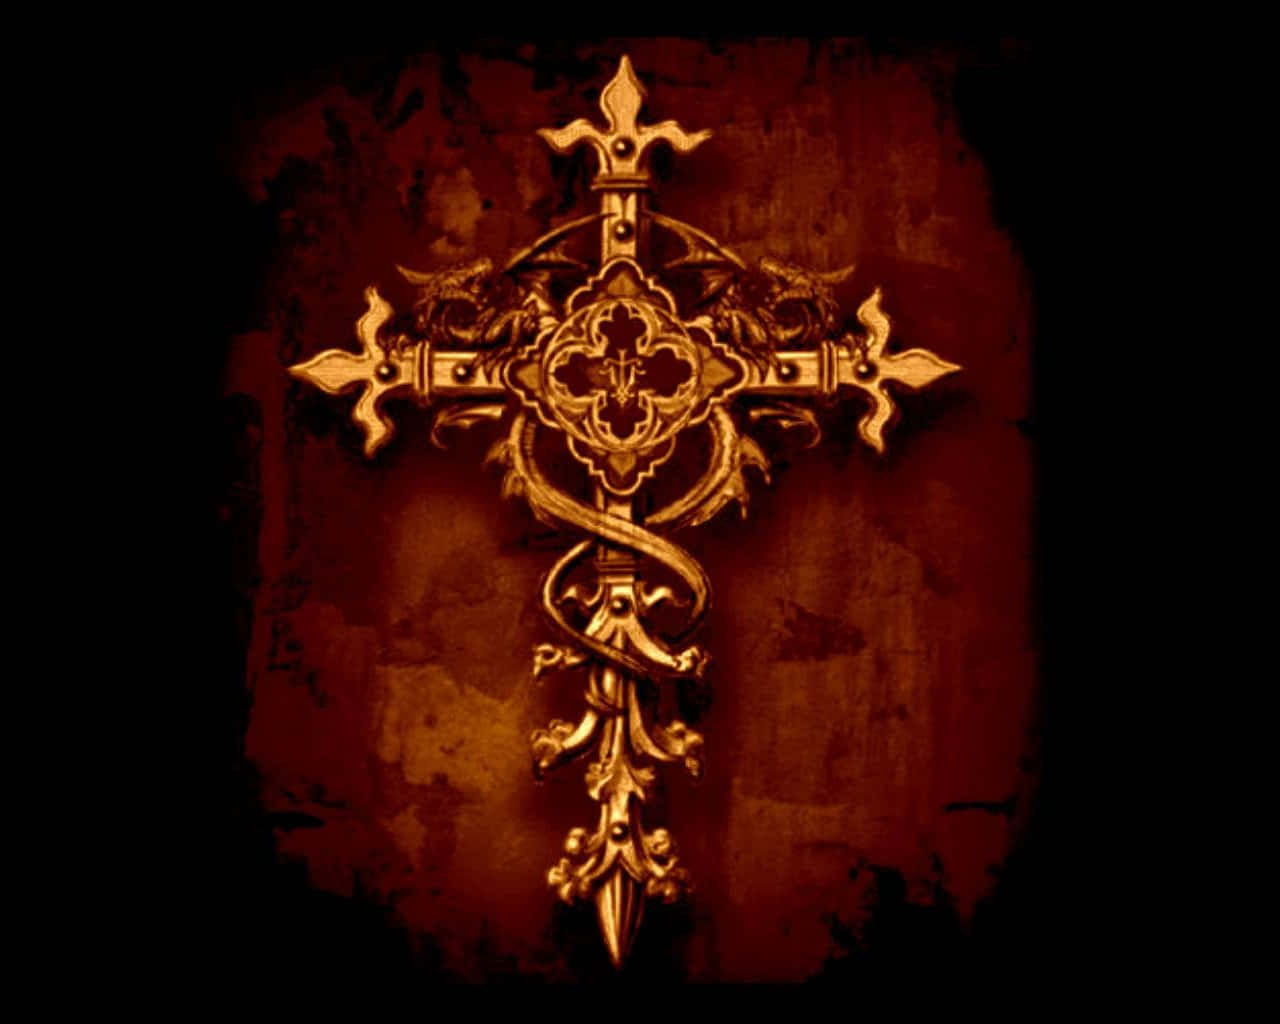 Einschönes, Niedliches Kreuz, Das Den Glauben, Die Hoffnung Und Die Liebe Darstellt Und Symbolisiert. Wallpaper